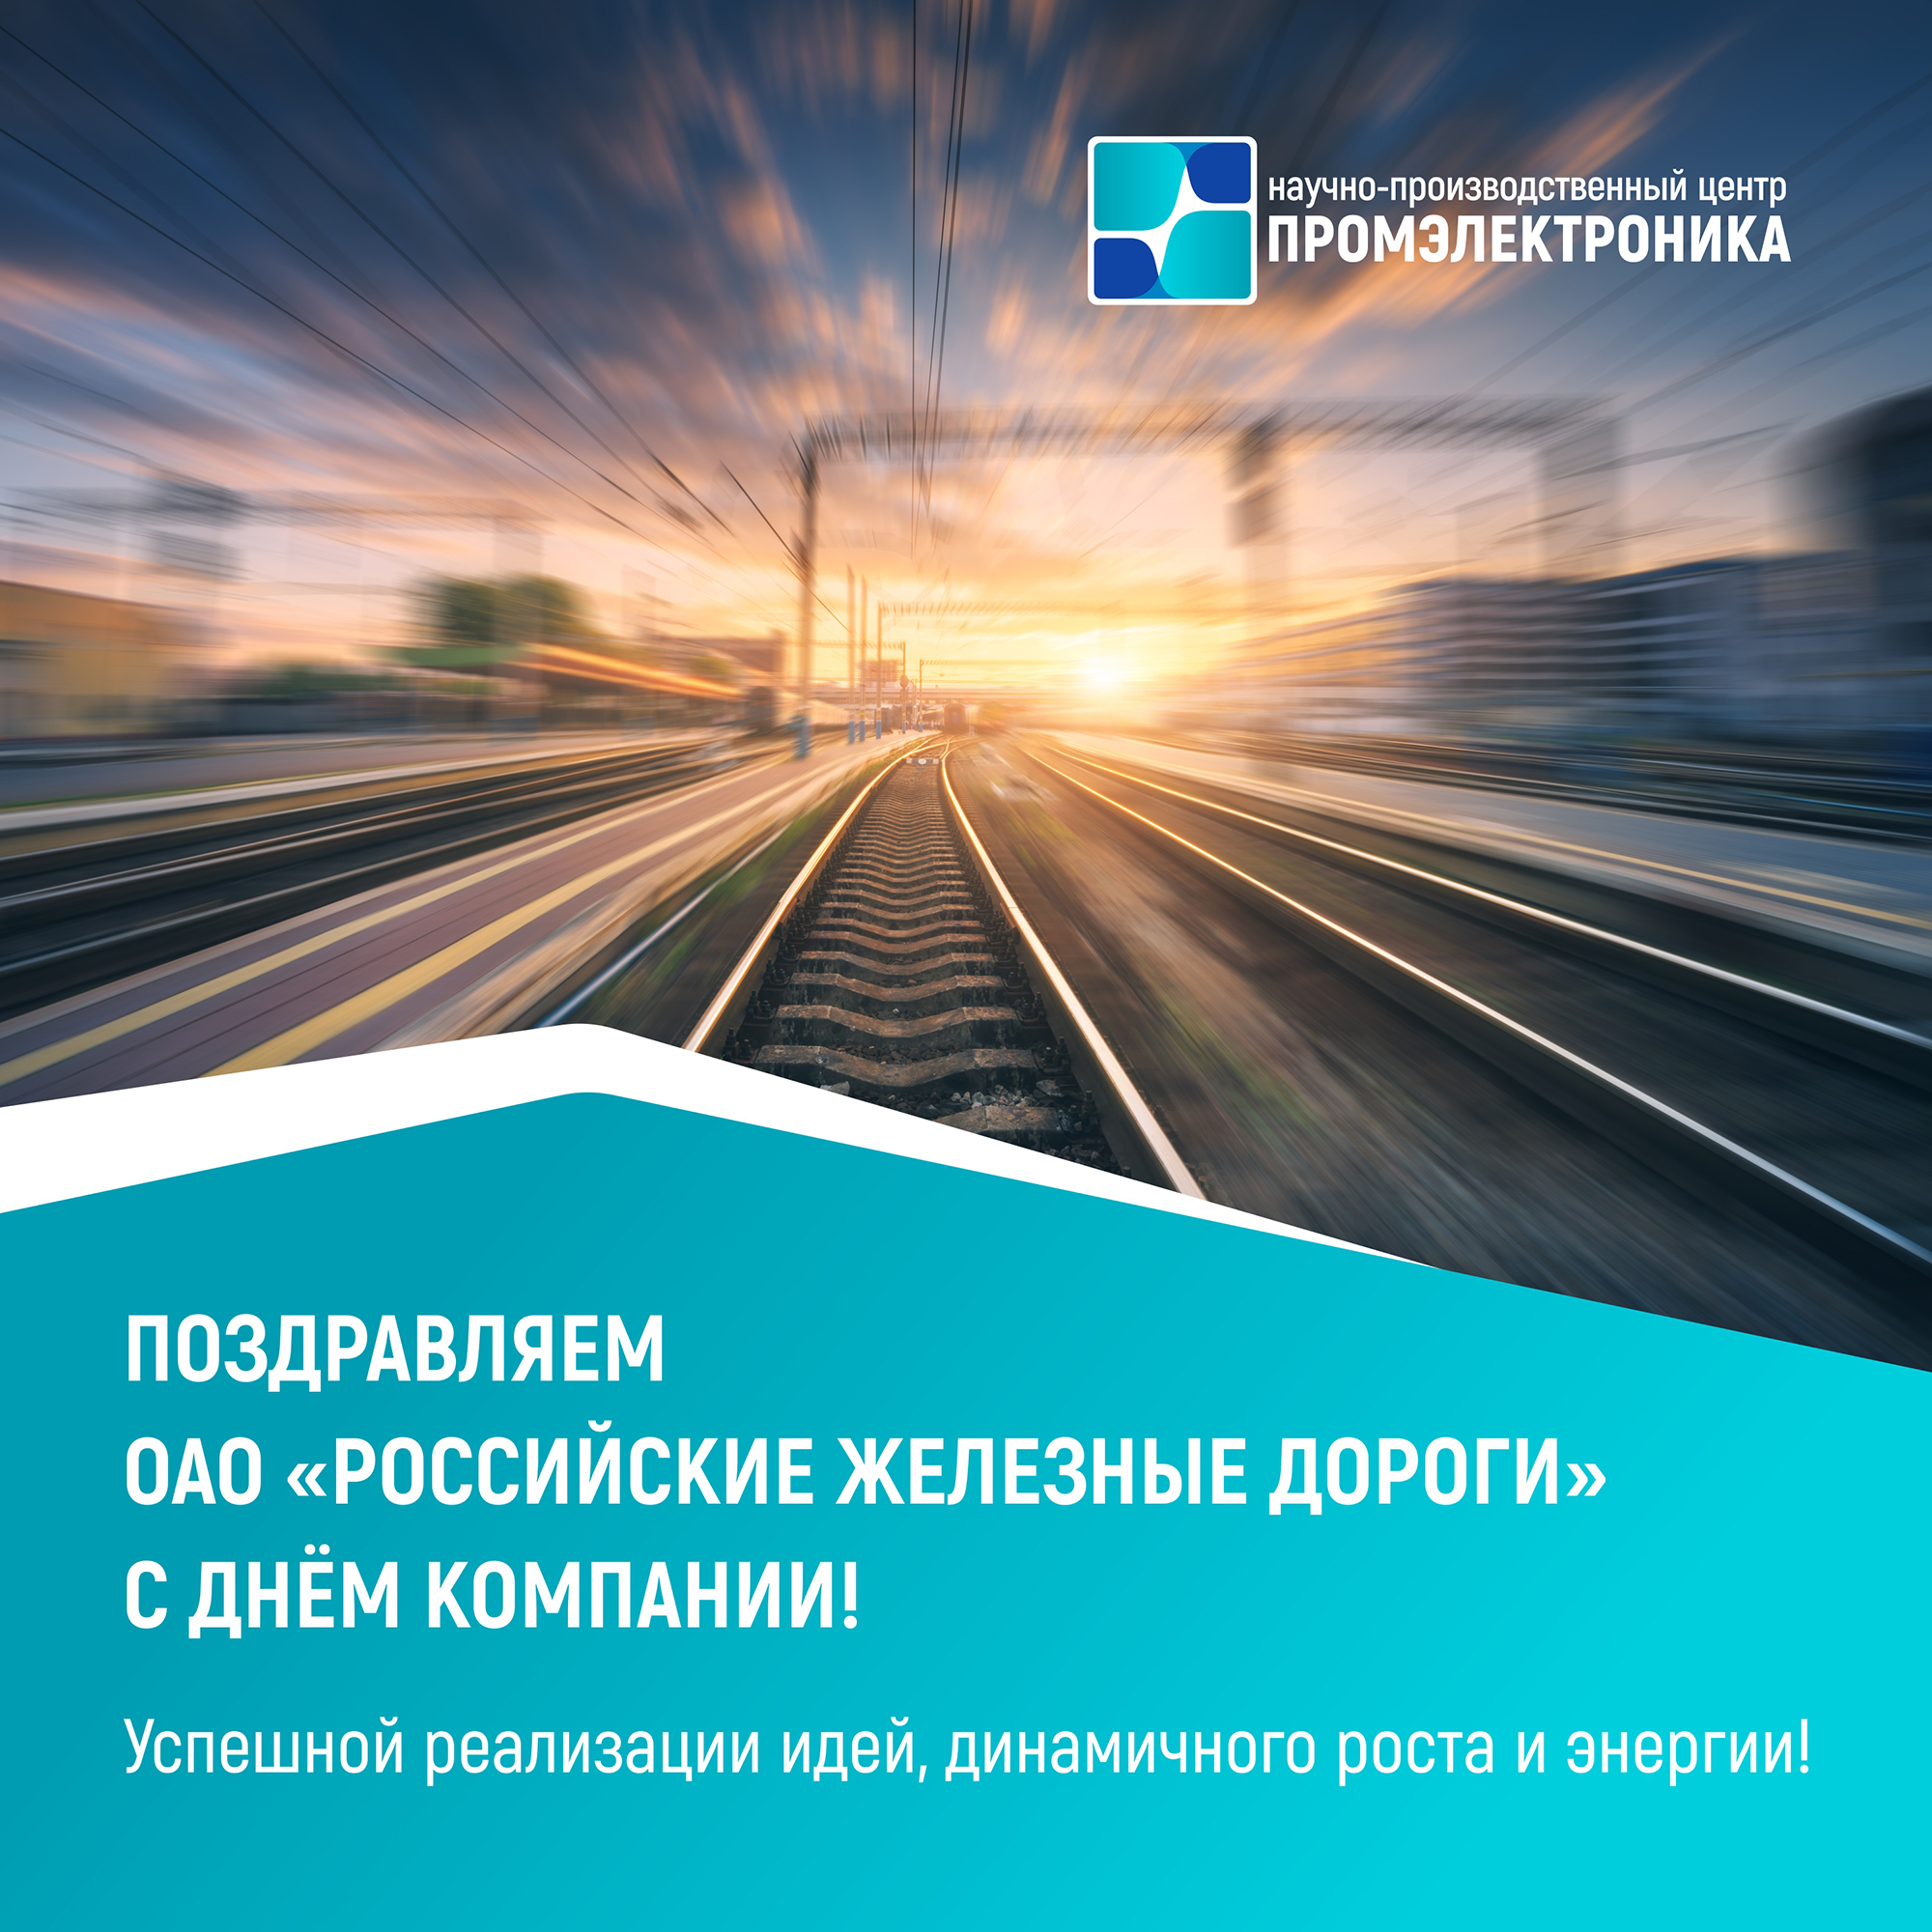 С днём компании «российские железные дороги»